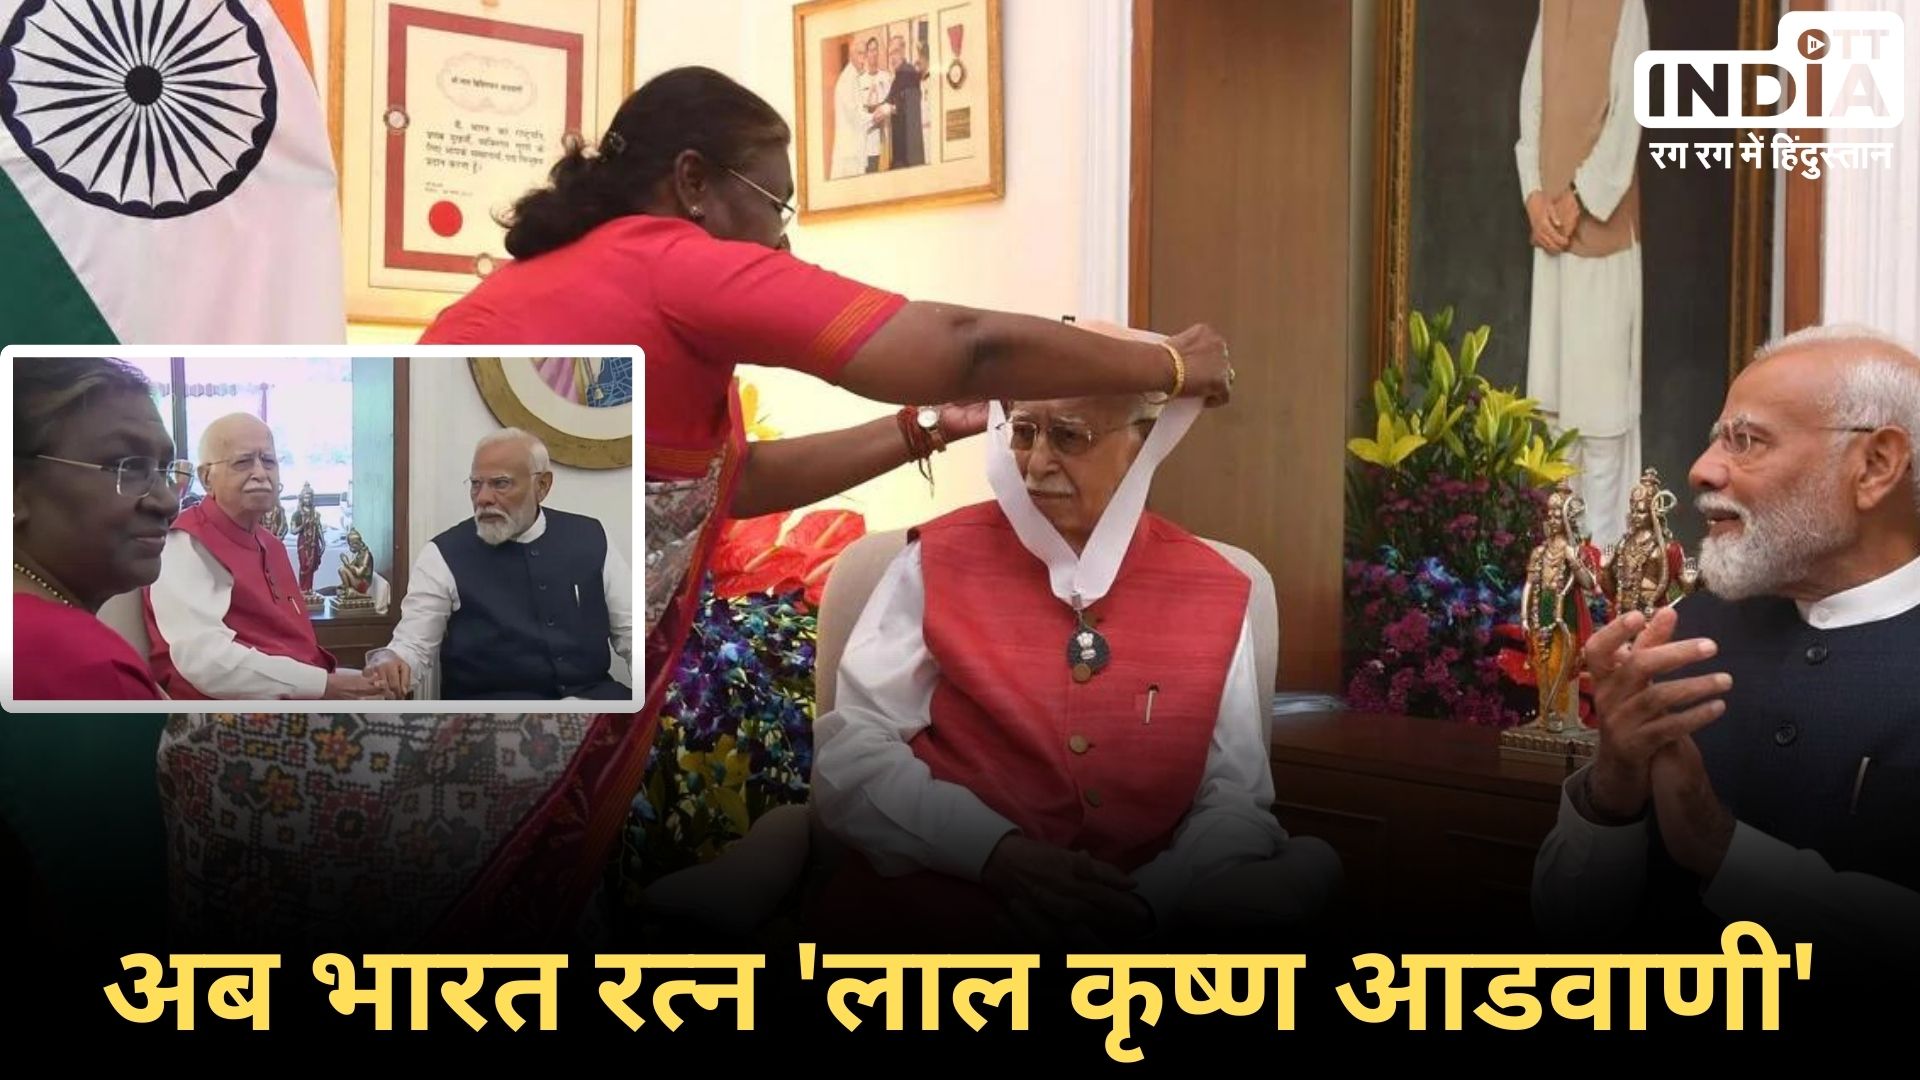 LK ADVANI BHARAT RATNA: मोदी की मौजूदगी में राष्ट्रपति मुर्मु ने आडवाणी के घर जाकर किया उनको भारत रत्न से सम्मानित